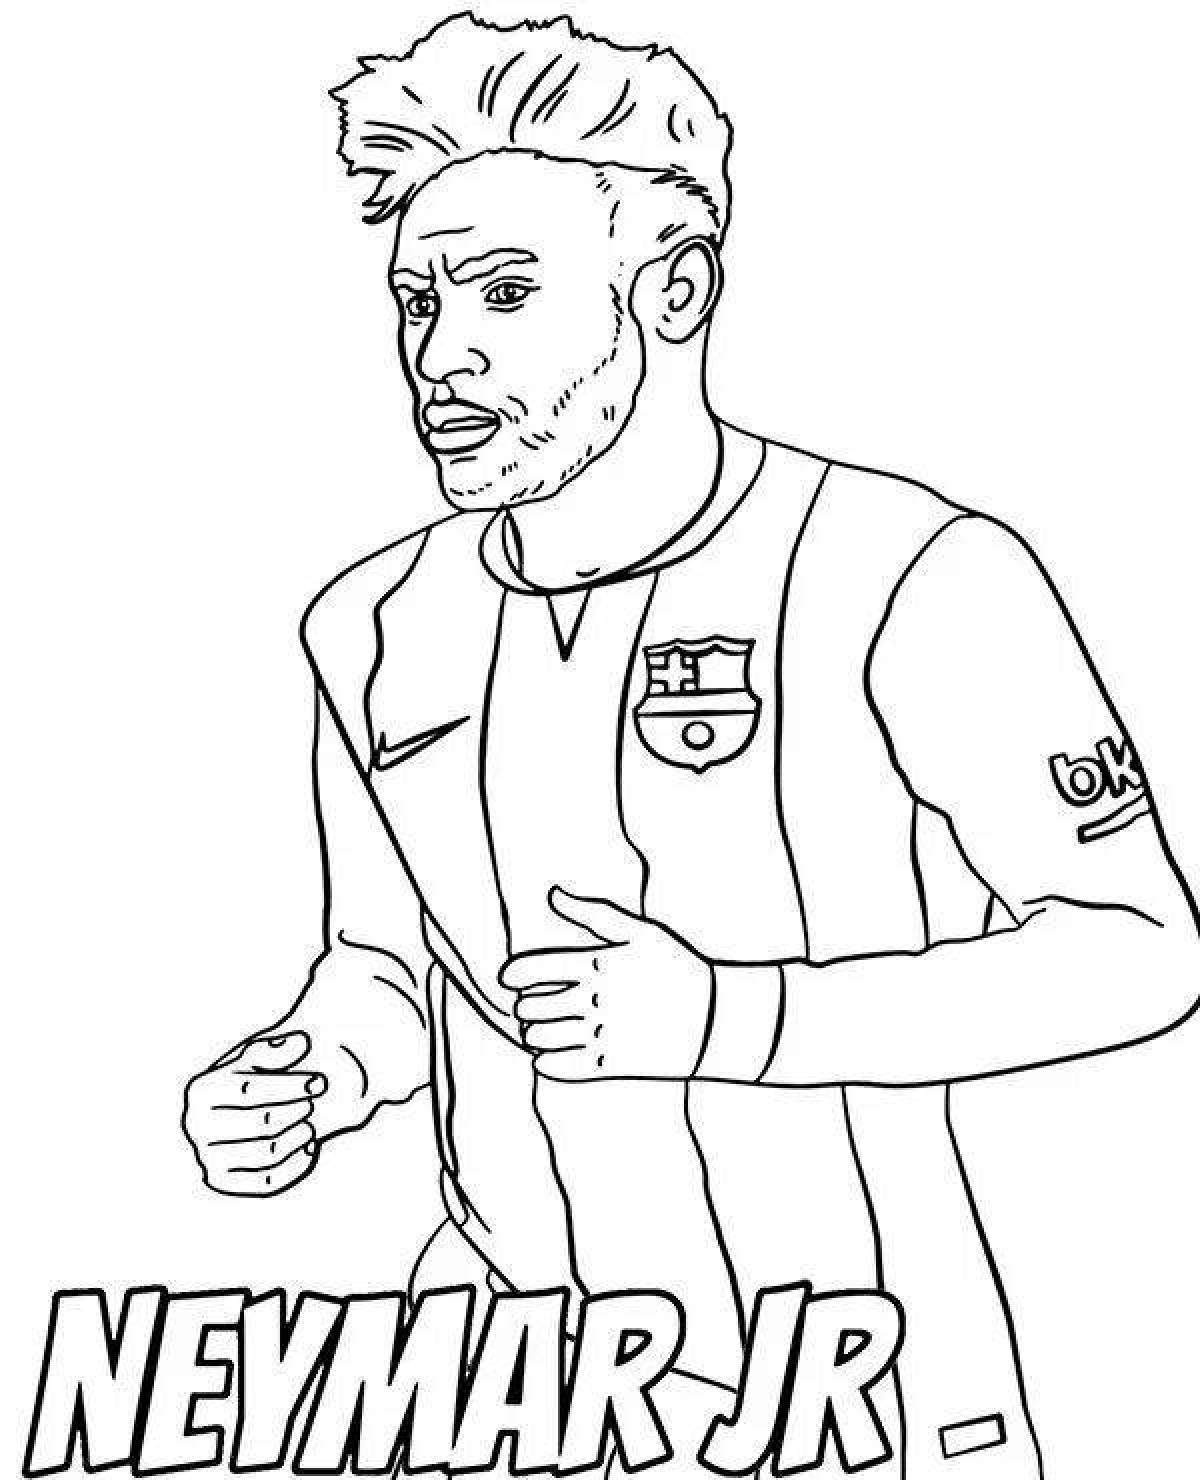 Neymar's attractive coloring